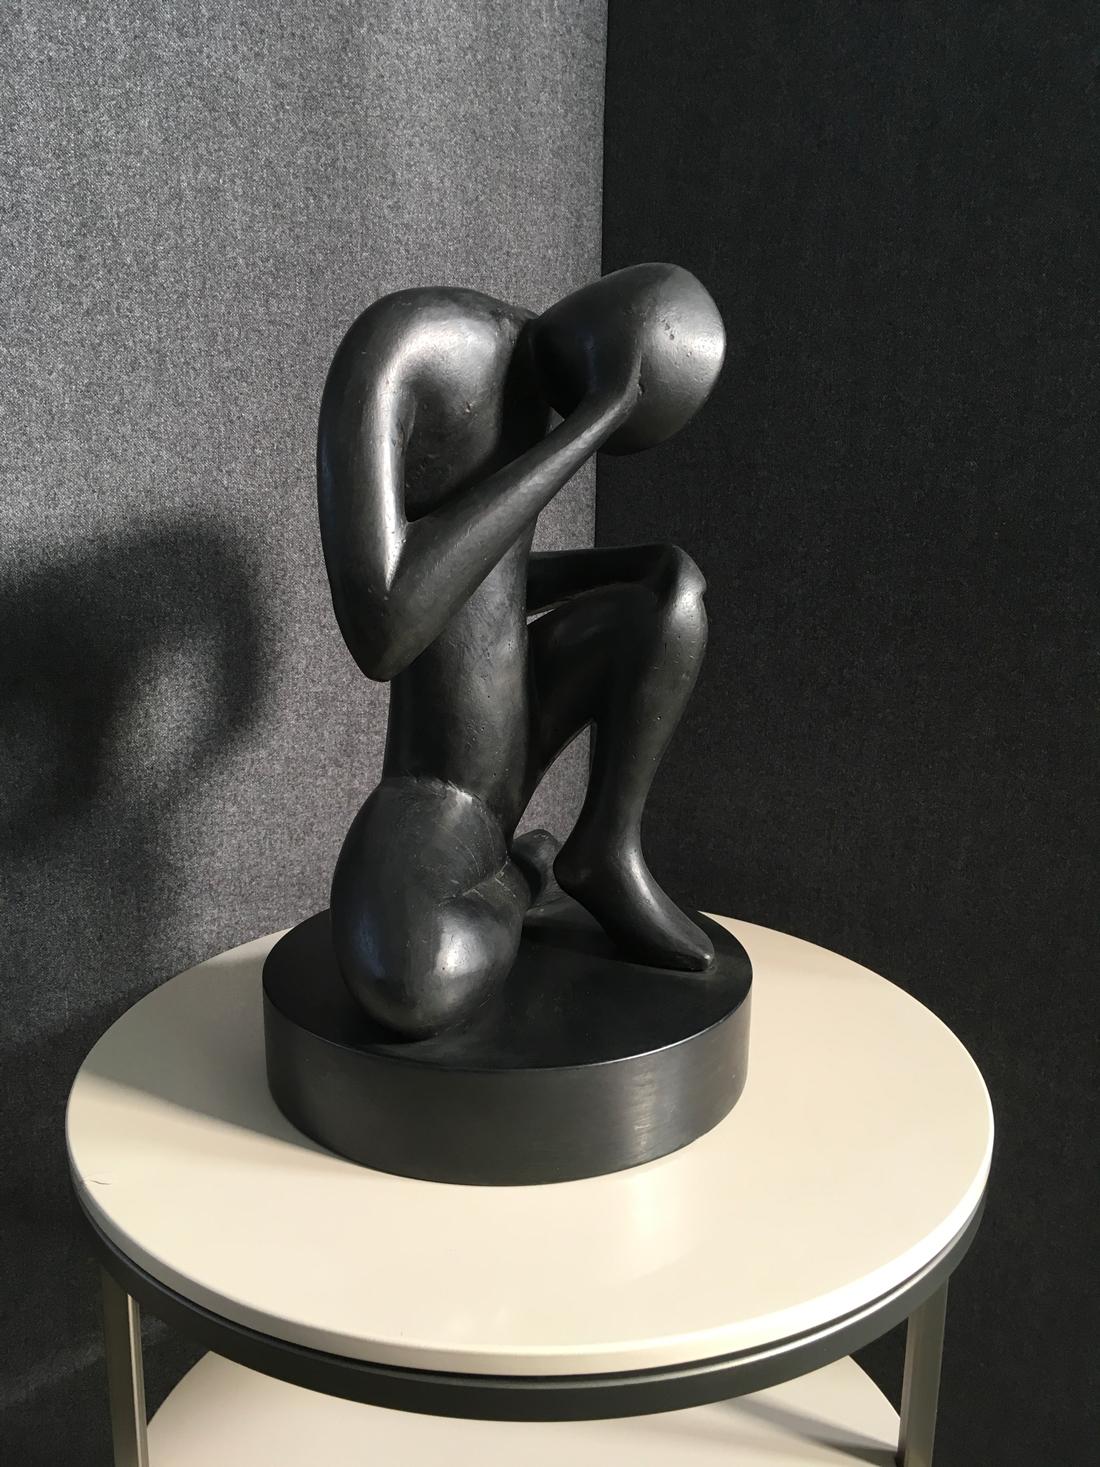 Es handelt sich um eine abstrakte Skulptur aus Bronze, die von dem italienischen Künstler Andrea Picini geschaffen wurde.
Die  Kunstwerke sind handgefertigt von  der Technik der verlorenen Wachsbronze und hat eine schwarze  Holz  Keller. Der Titel